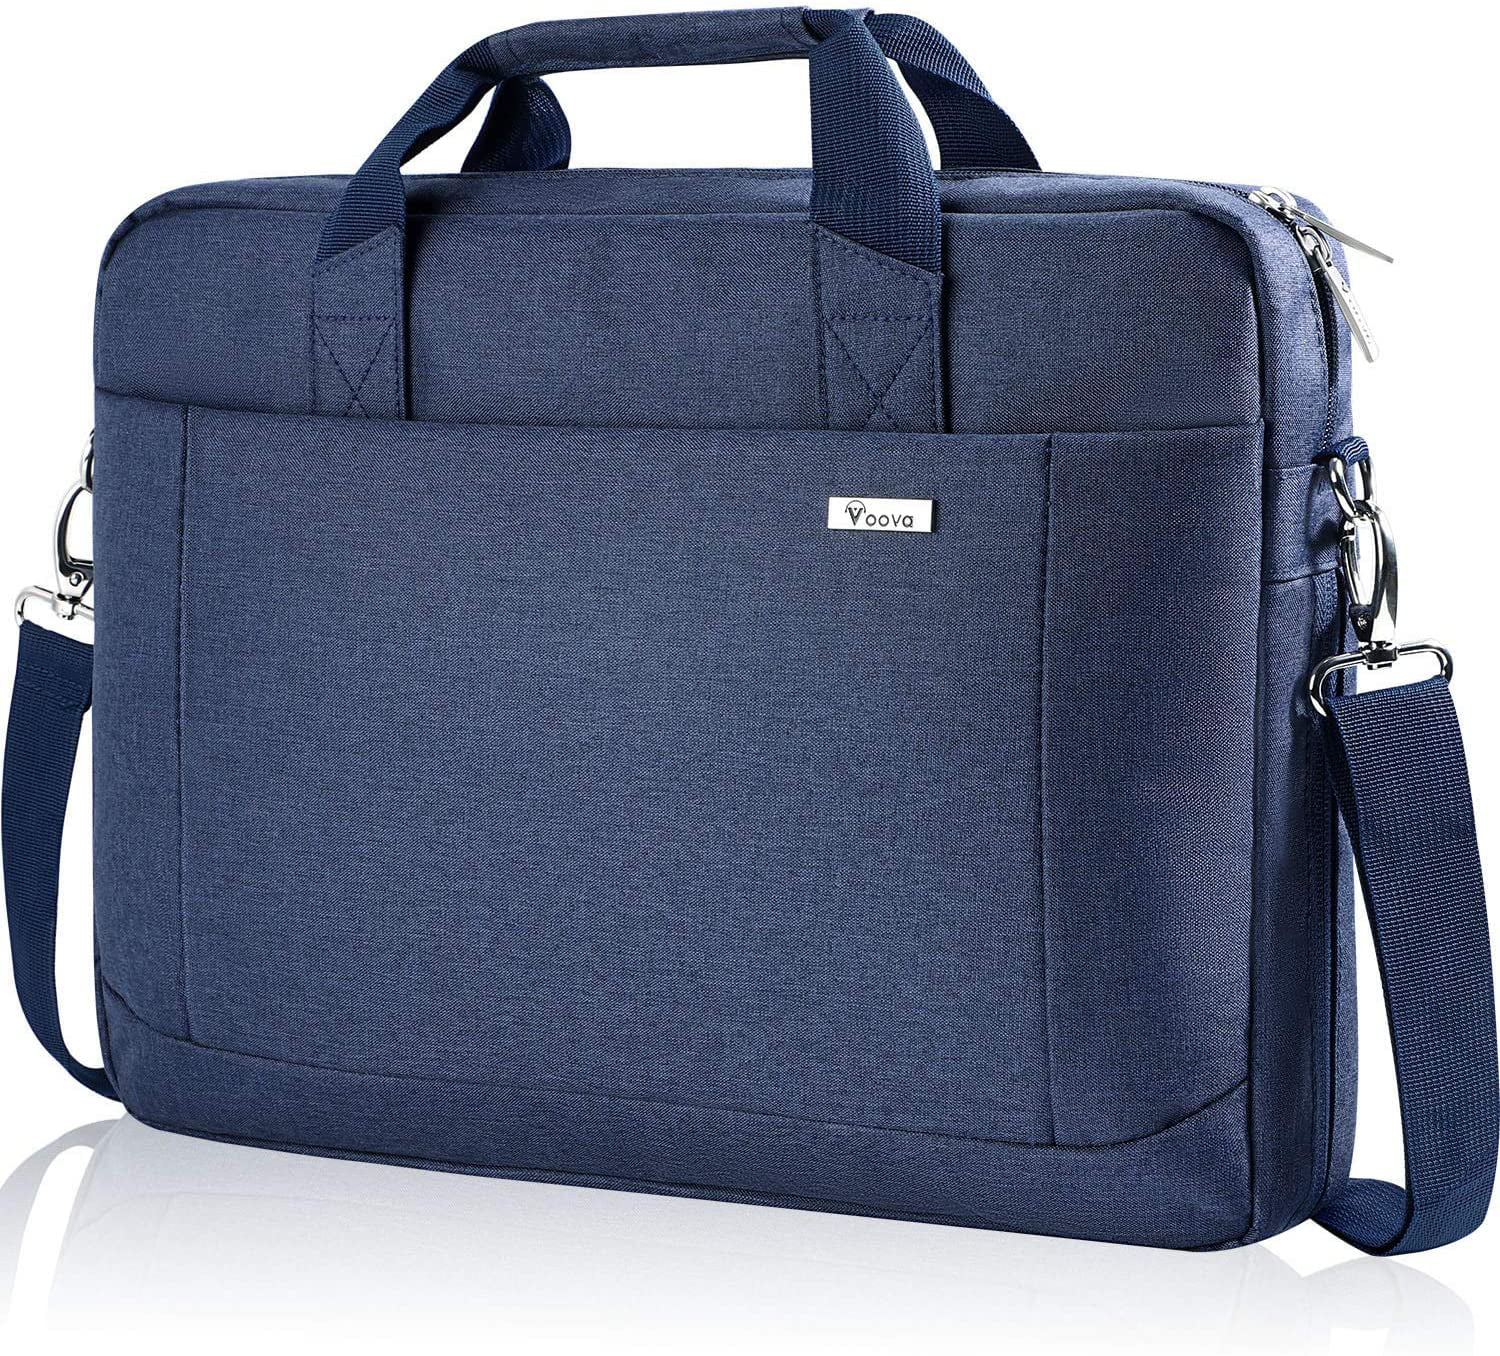 Lightweight 15 inch Laptop Bag Business Messenger Briefcases Pink Rose Waterproof Computer Tablet Shoulder Bag Carrying Case Handbag for Men and Women